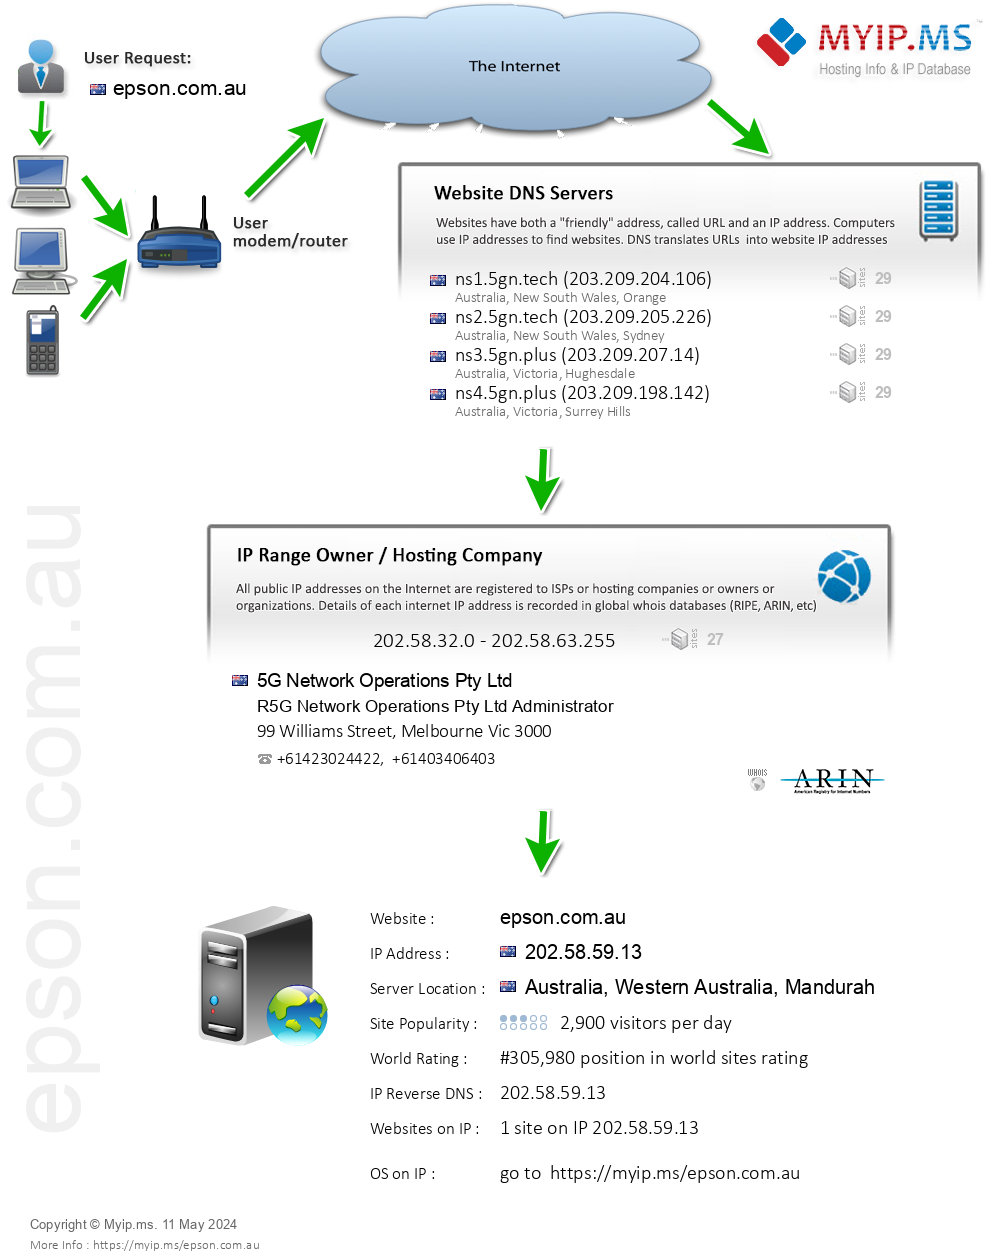 Epson.com.au - Website Hosting Visual IP Diagram